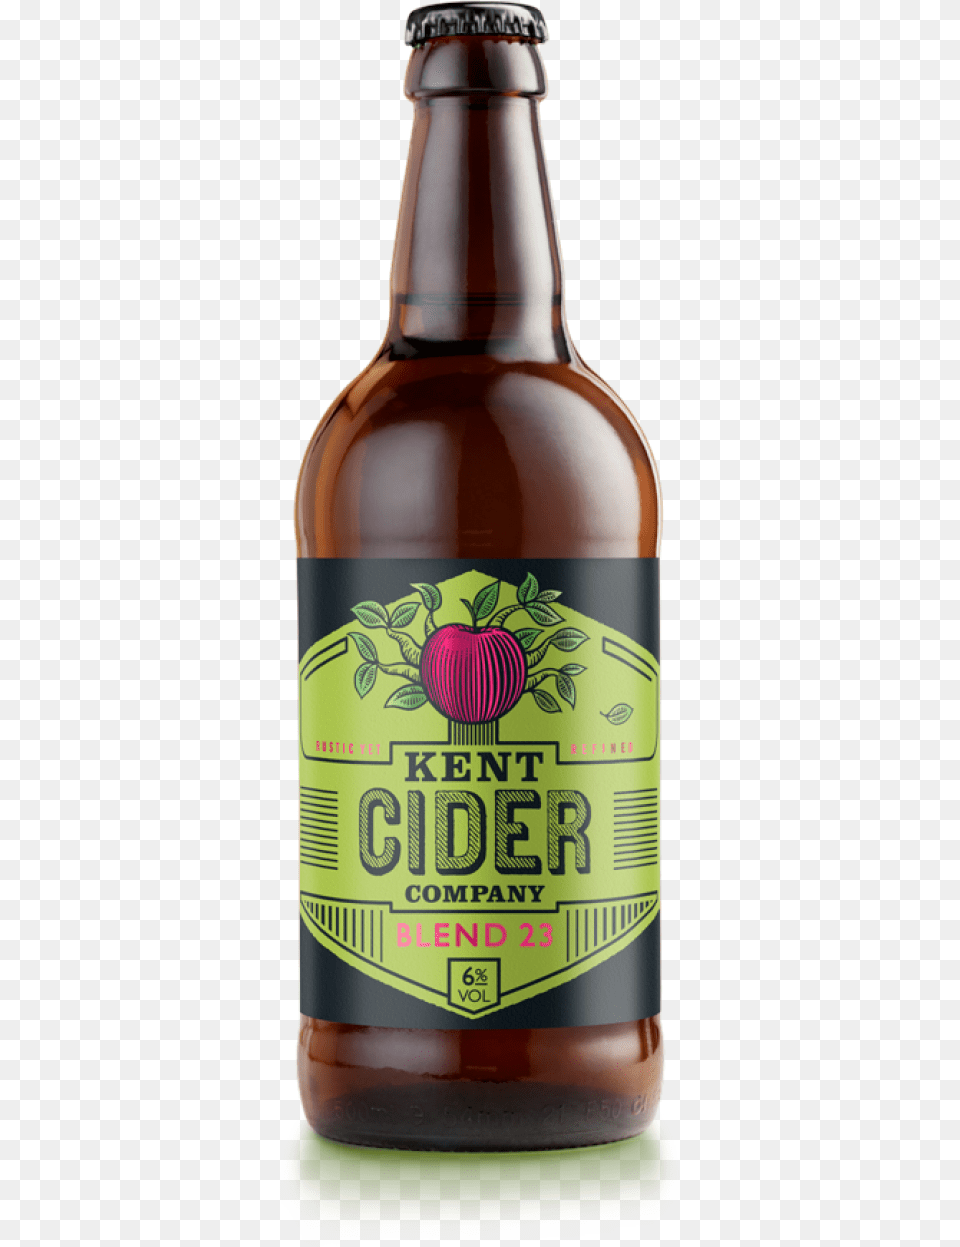 Kent Cider, Alcohol, Beer, Beer Bottle, Beverage Png Image